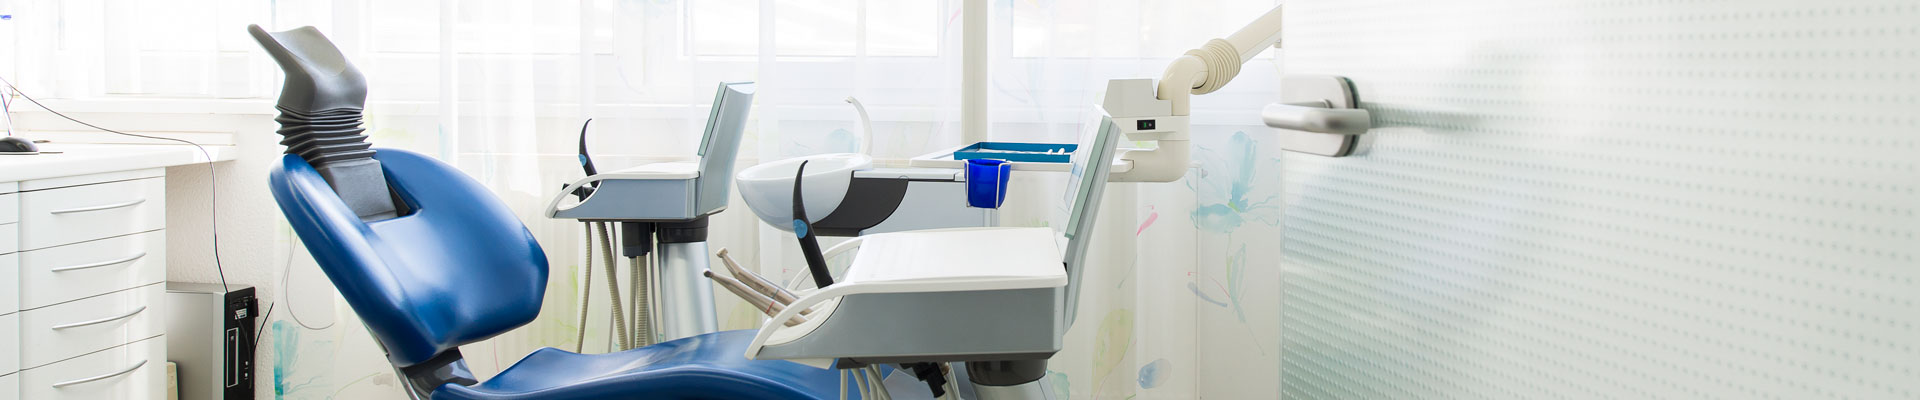 Blick in ein Behandlungszimmer mit blauem Behandlungsstuhl